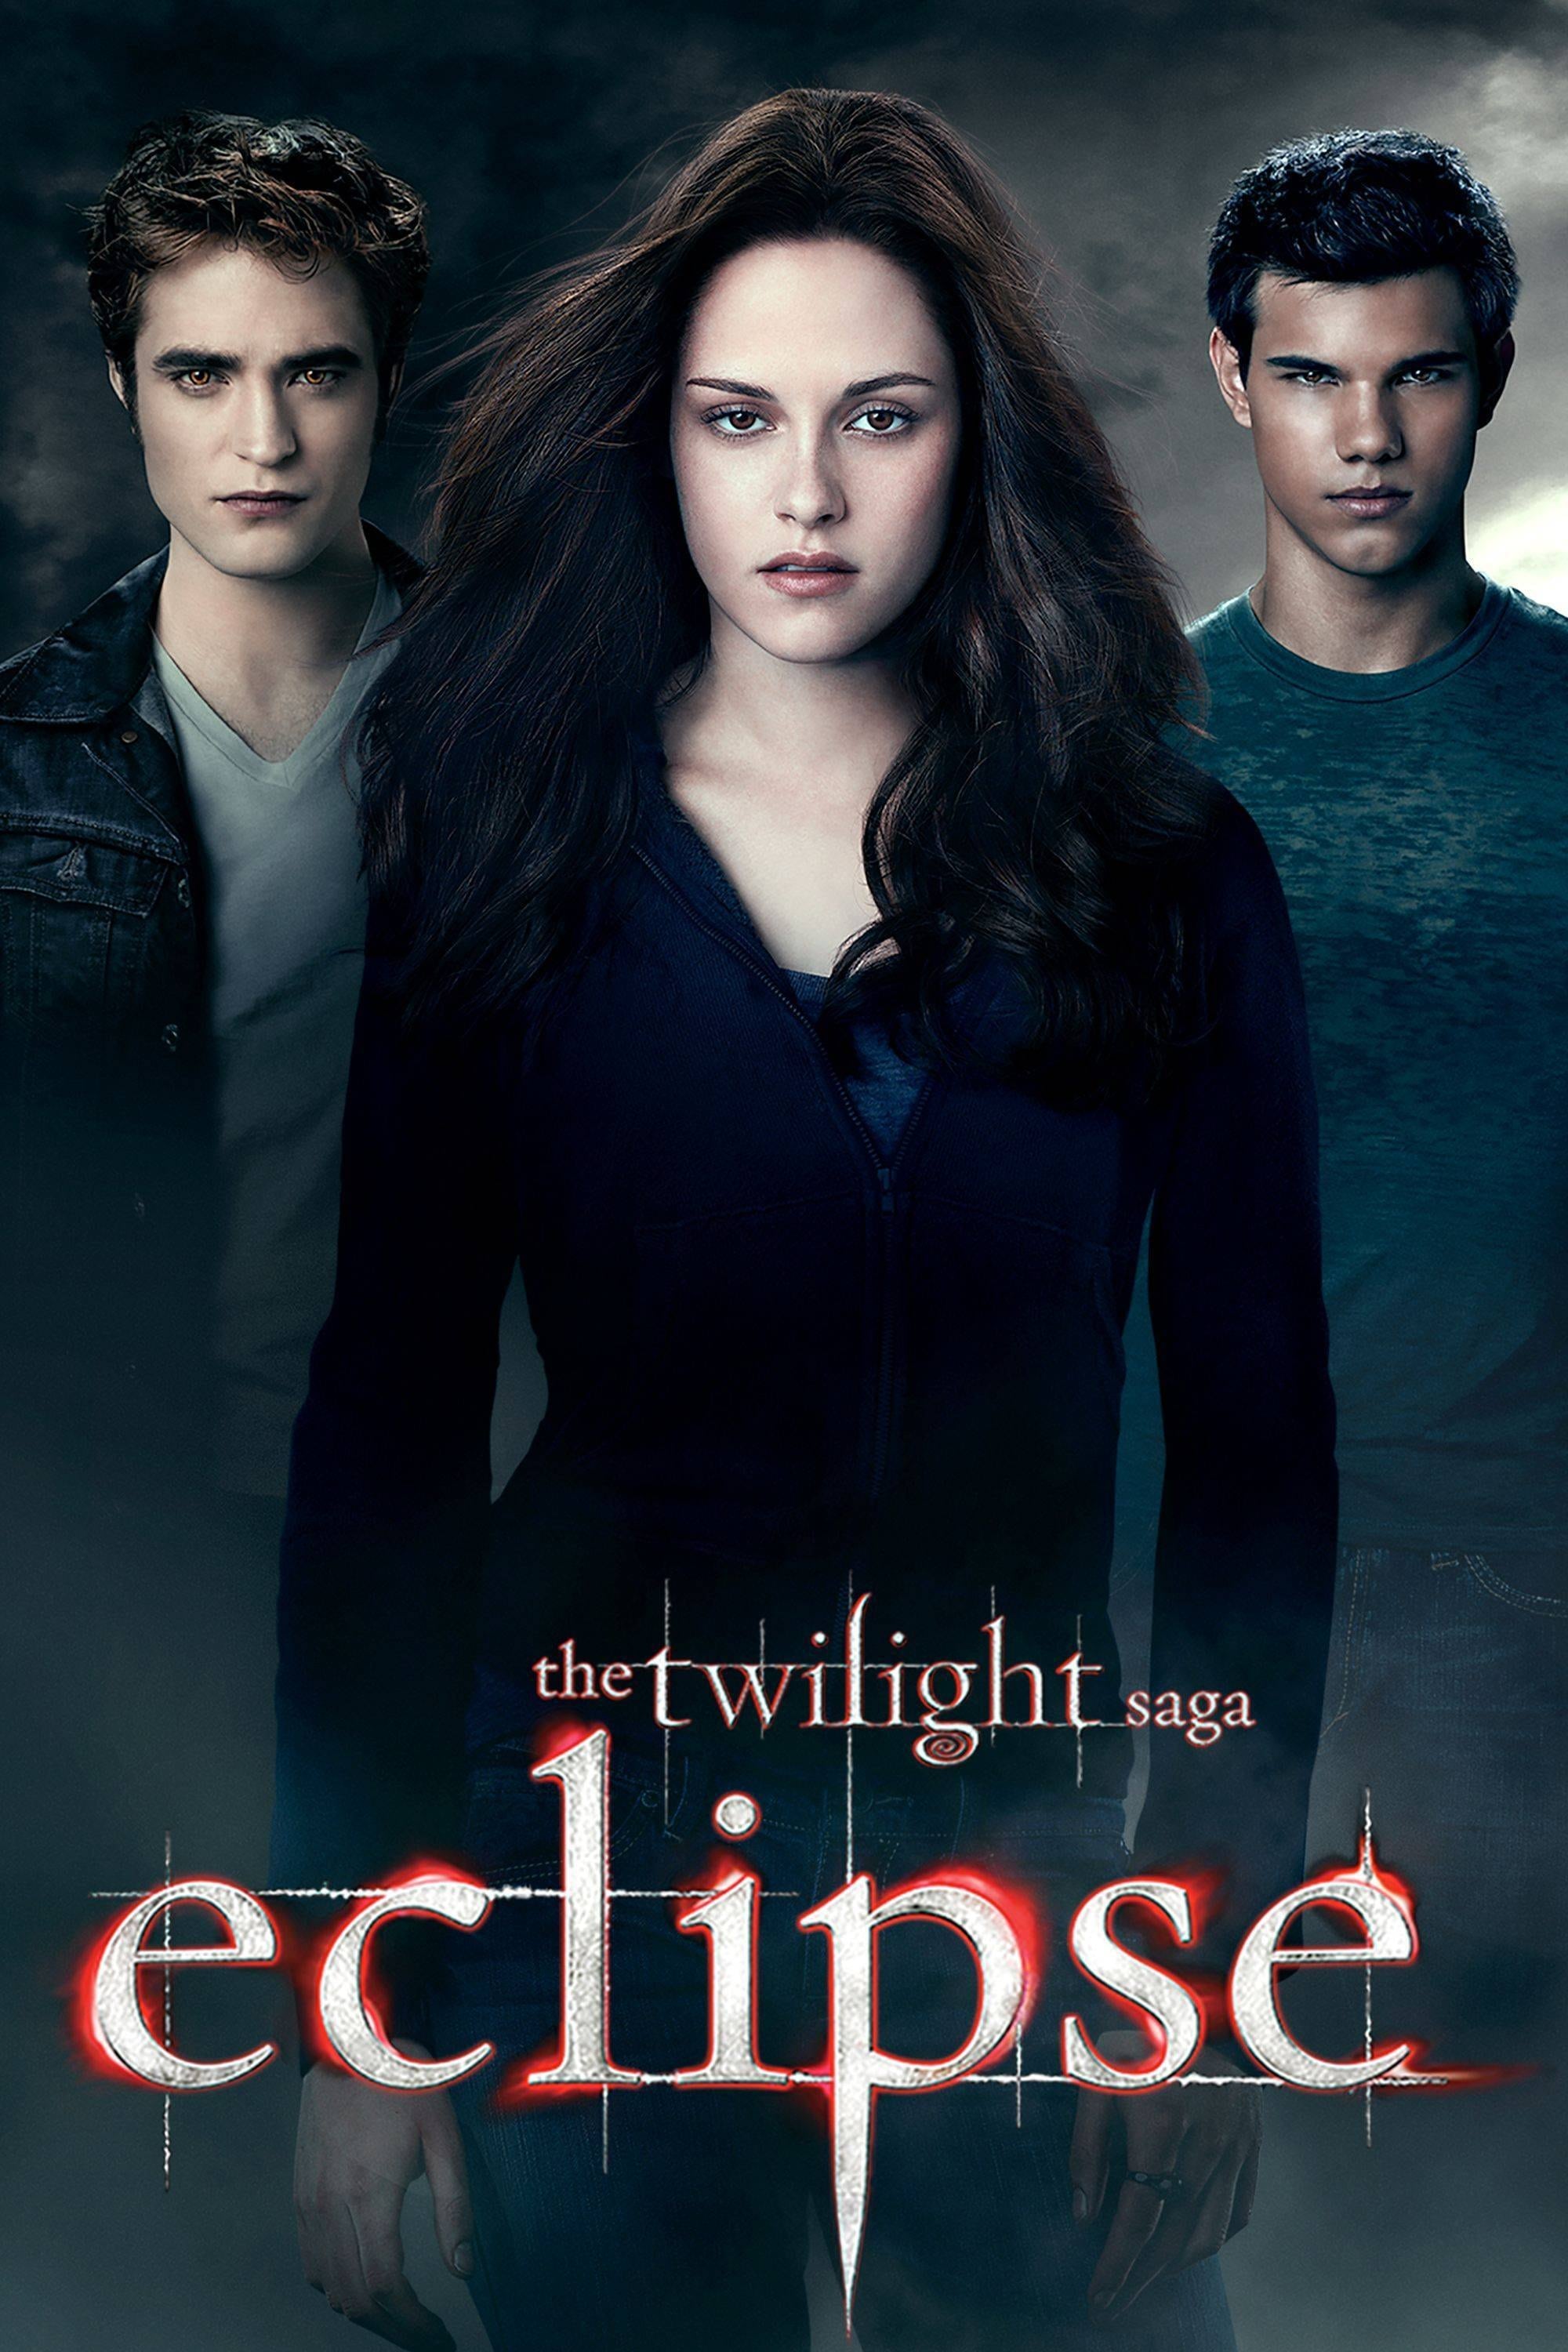 A Saga Crepúsculo: Eclipse (2010)